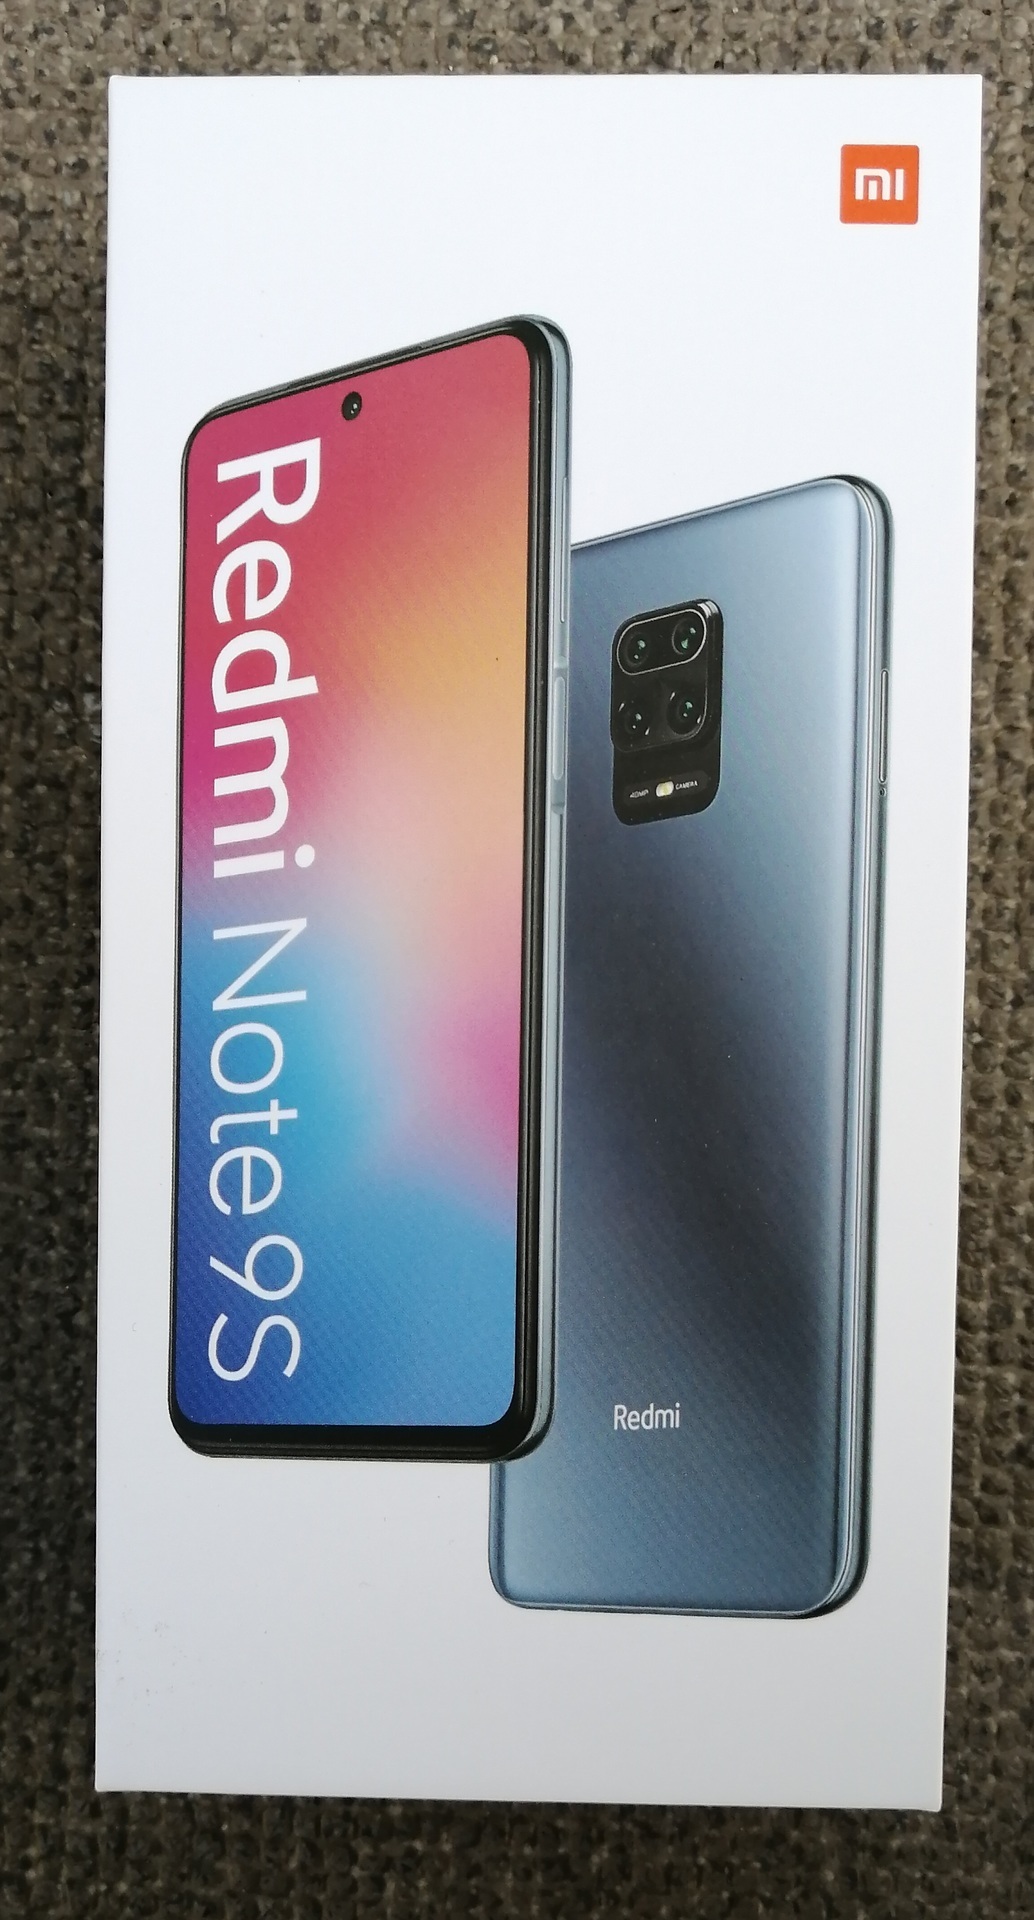 Xiaomi「Redmi Note 9S」を試す: KEN